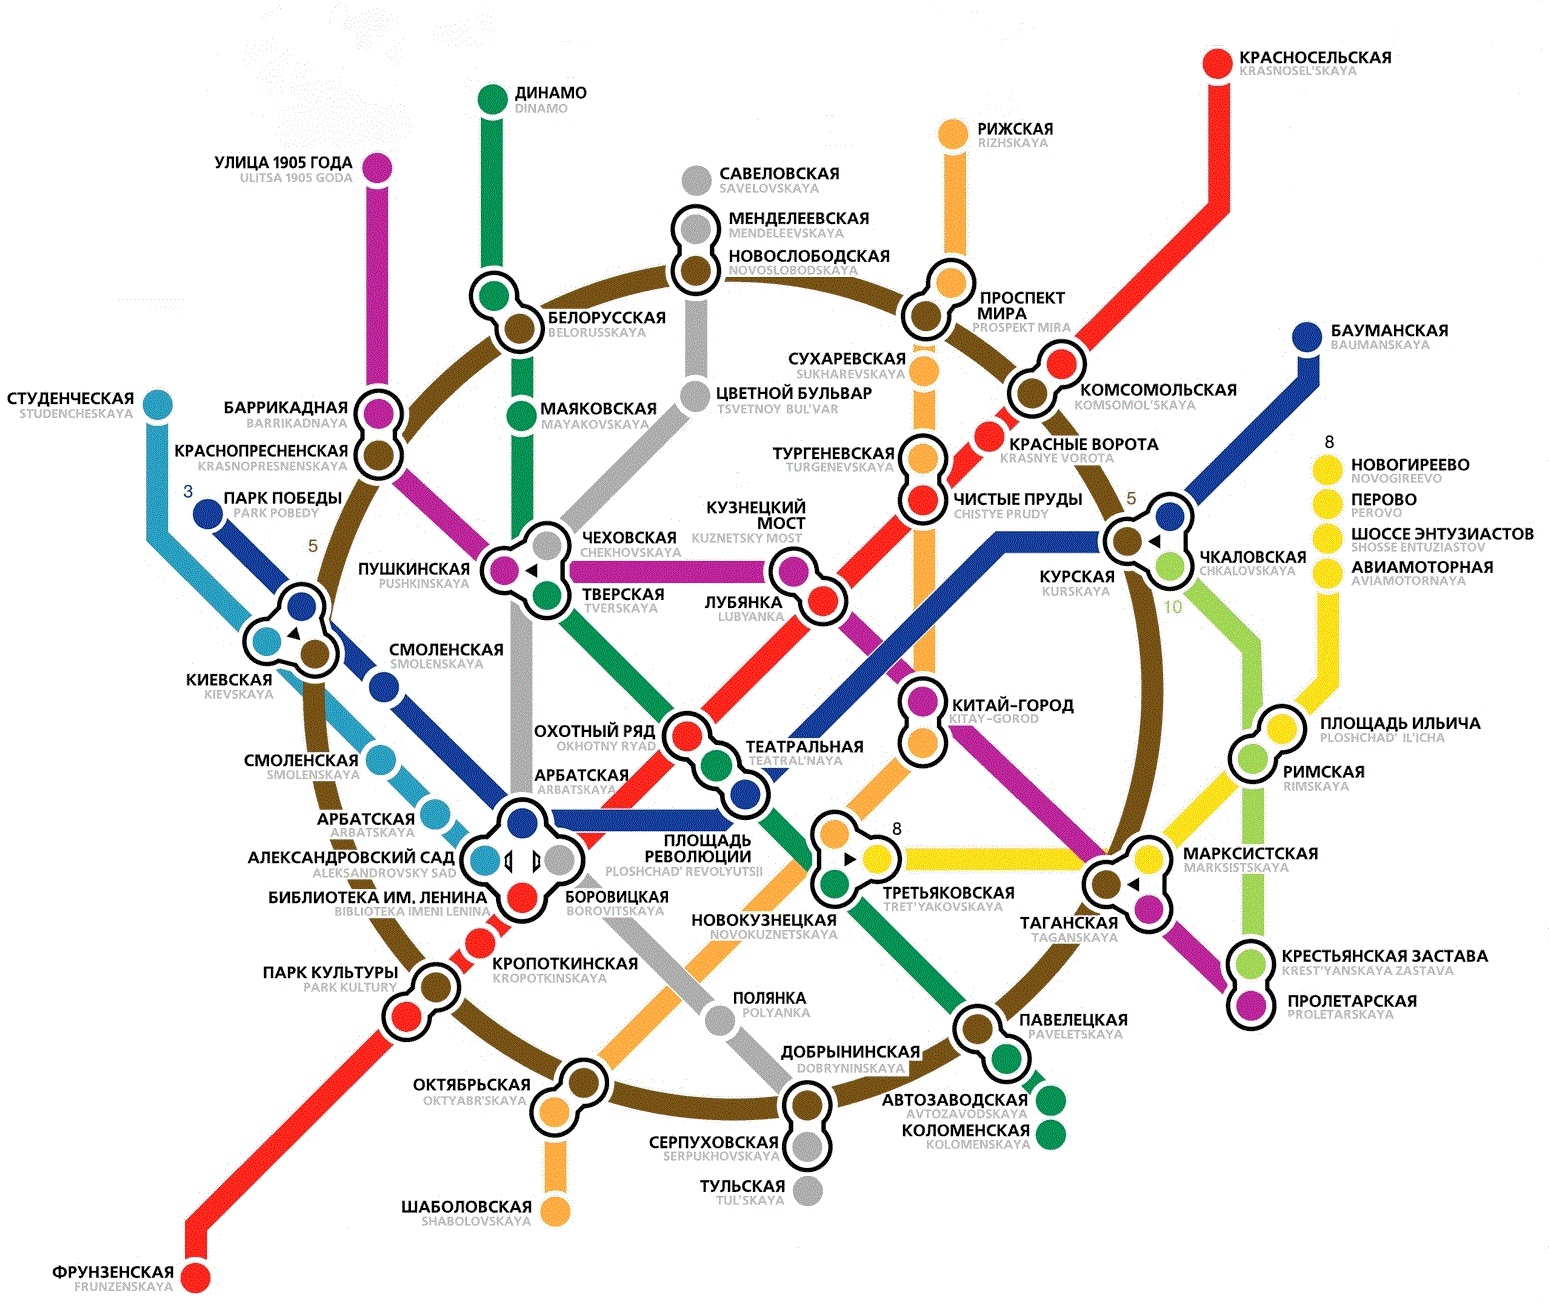 Схема станций метро для выезда курьеров от ЕЦТ